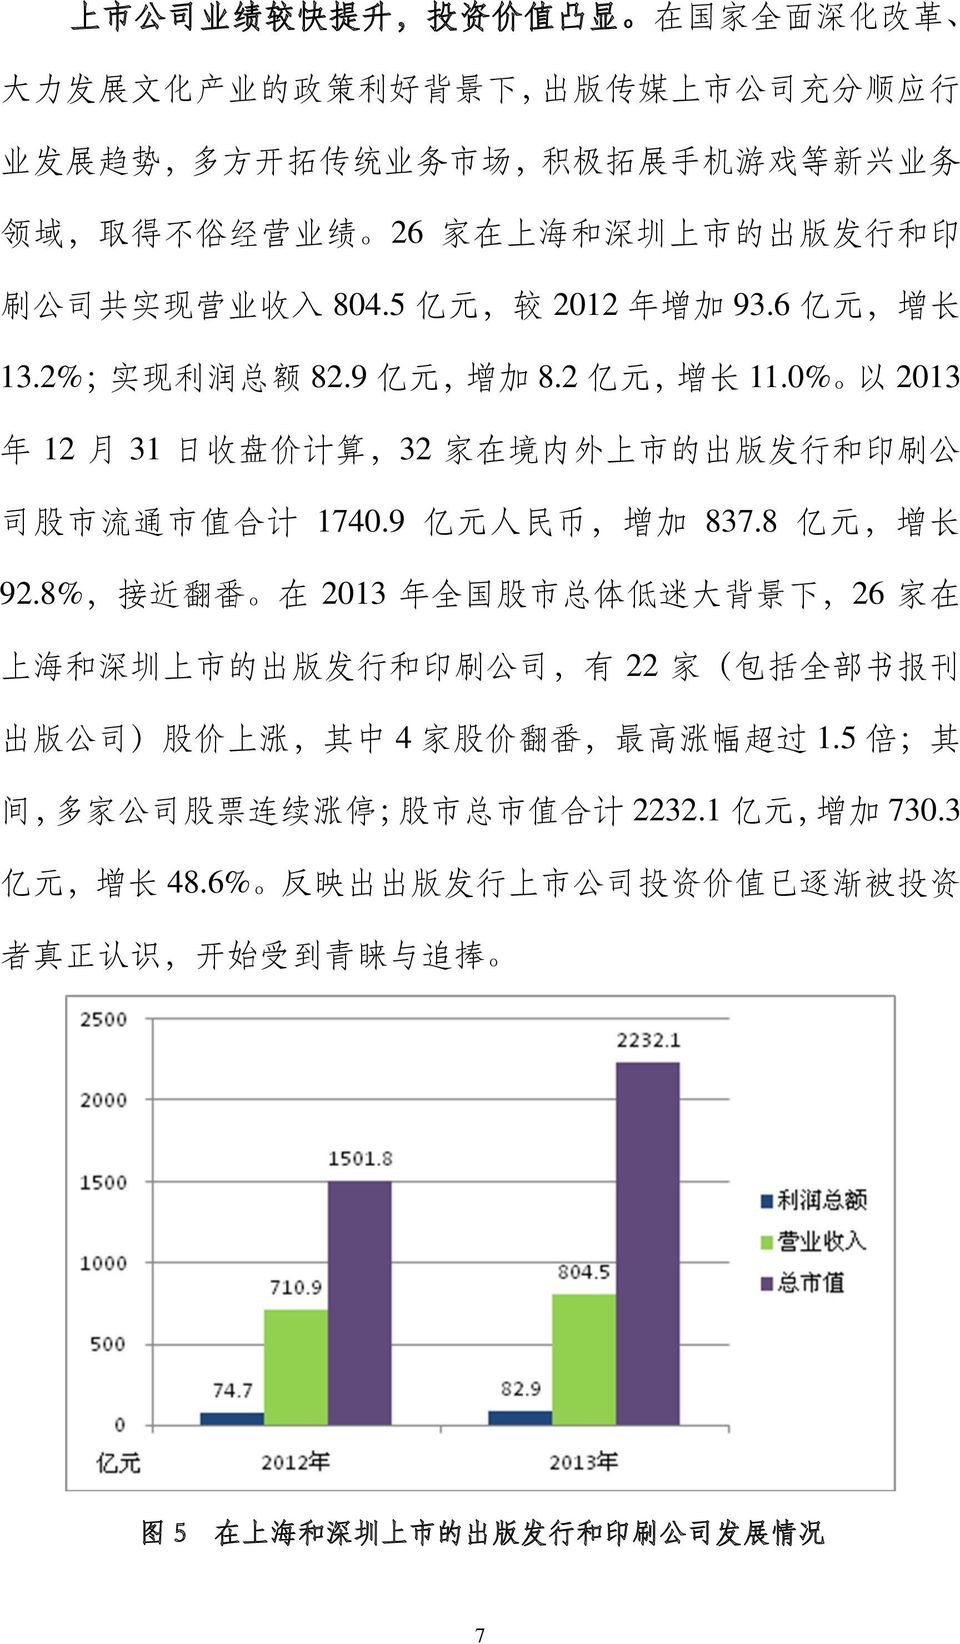 0% 以 2013 年 12 月 31 日 收 盘 价 计 算,32 家 在 境 内 外 上 市 的 出 版 发 行 和 印 刷 公 司 股 市 流 通 市 值 合 计 1740.9 亿 元 人 民 币, 增 加 837.8 亿 元, 增 长 92.